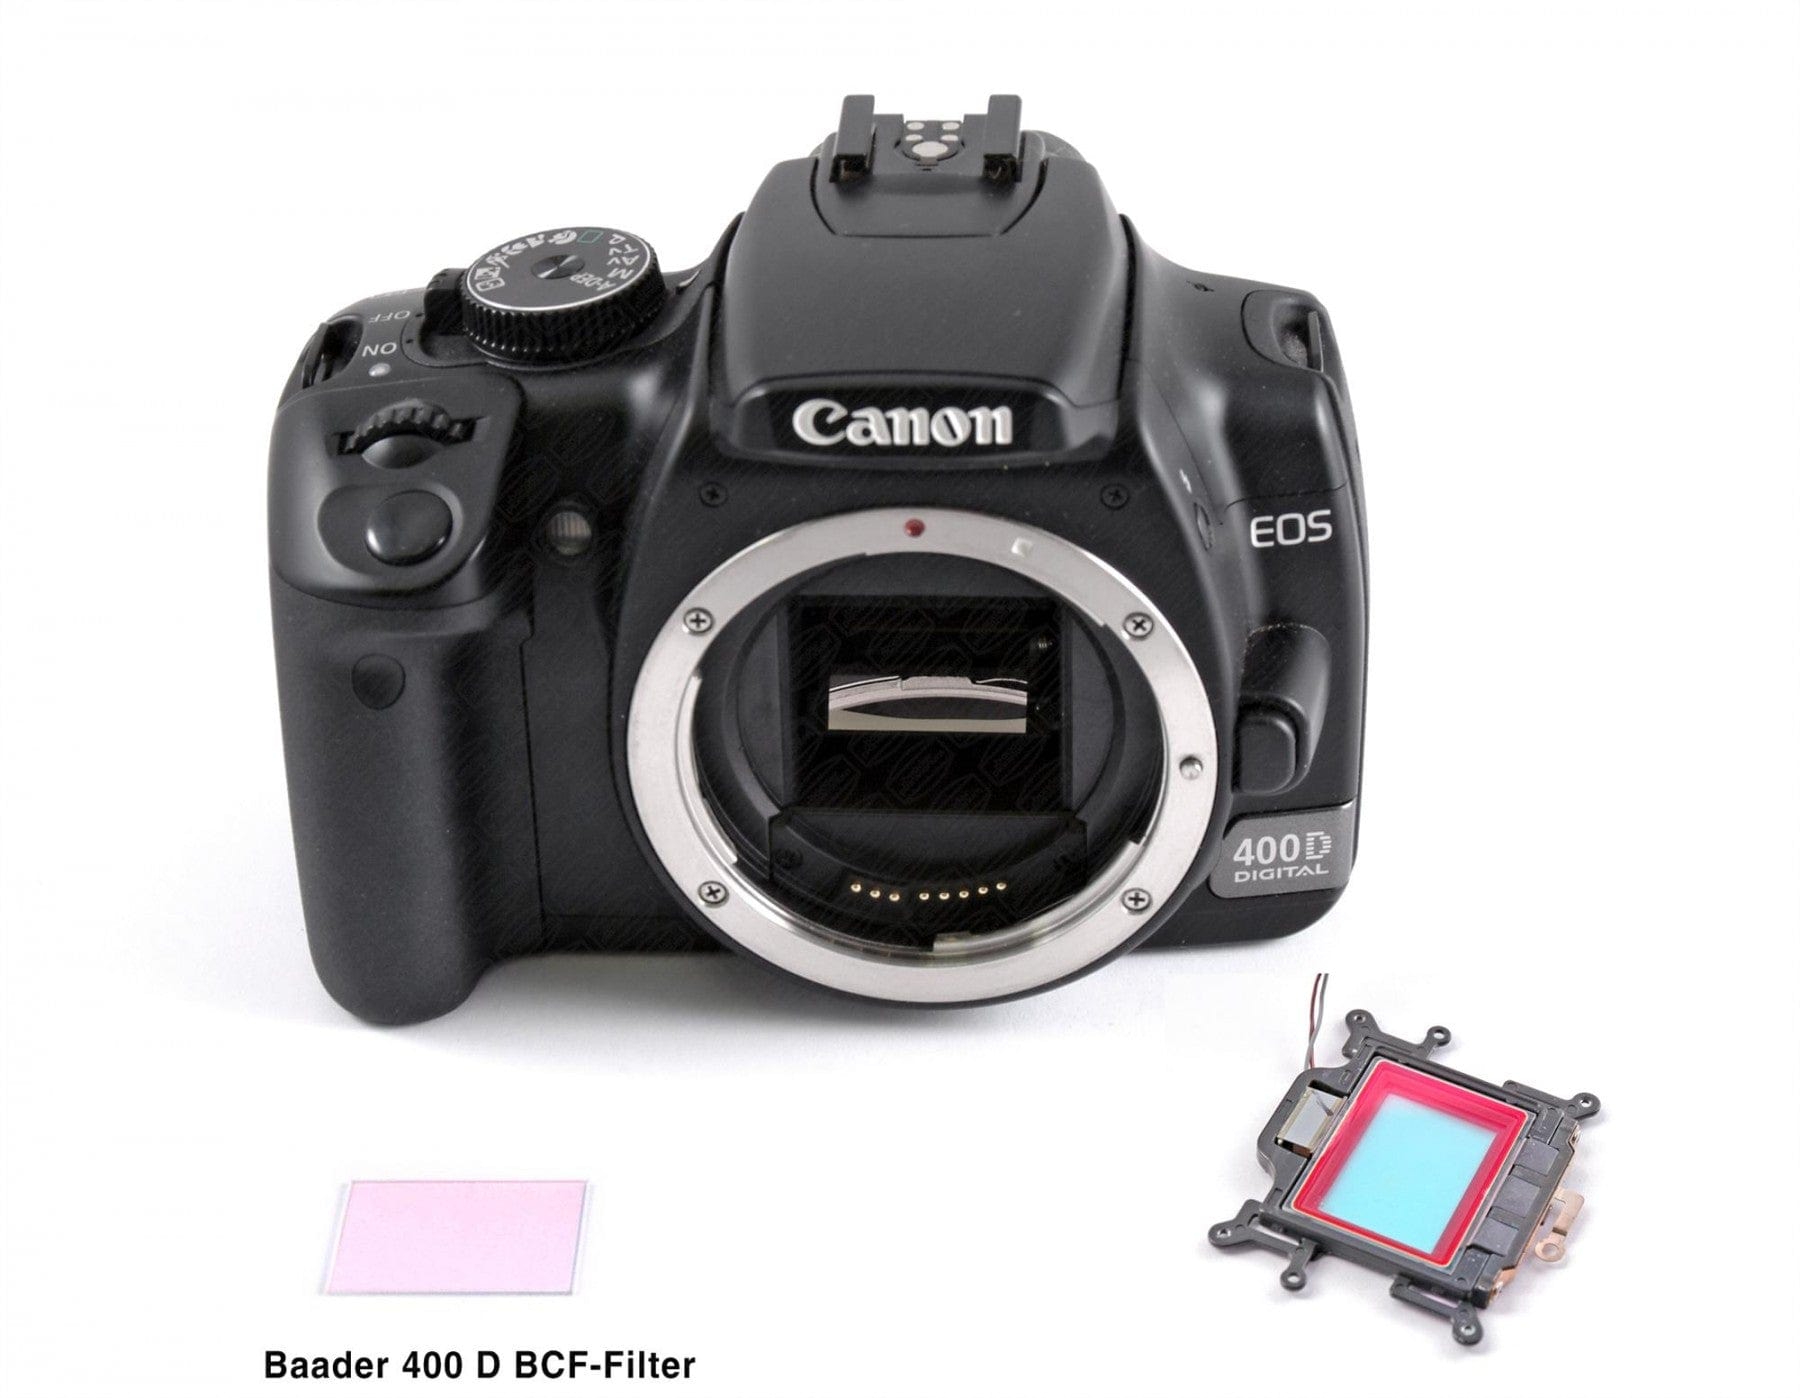 Baader Planetarium Filter Baader BCF Corrector Filter for Canon EOS Cameras - 2459213